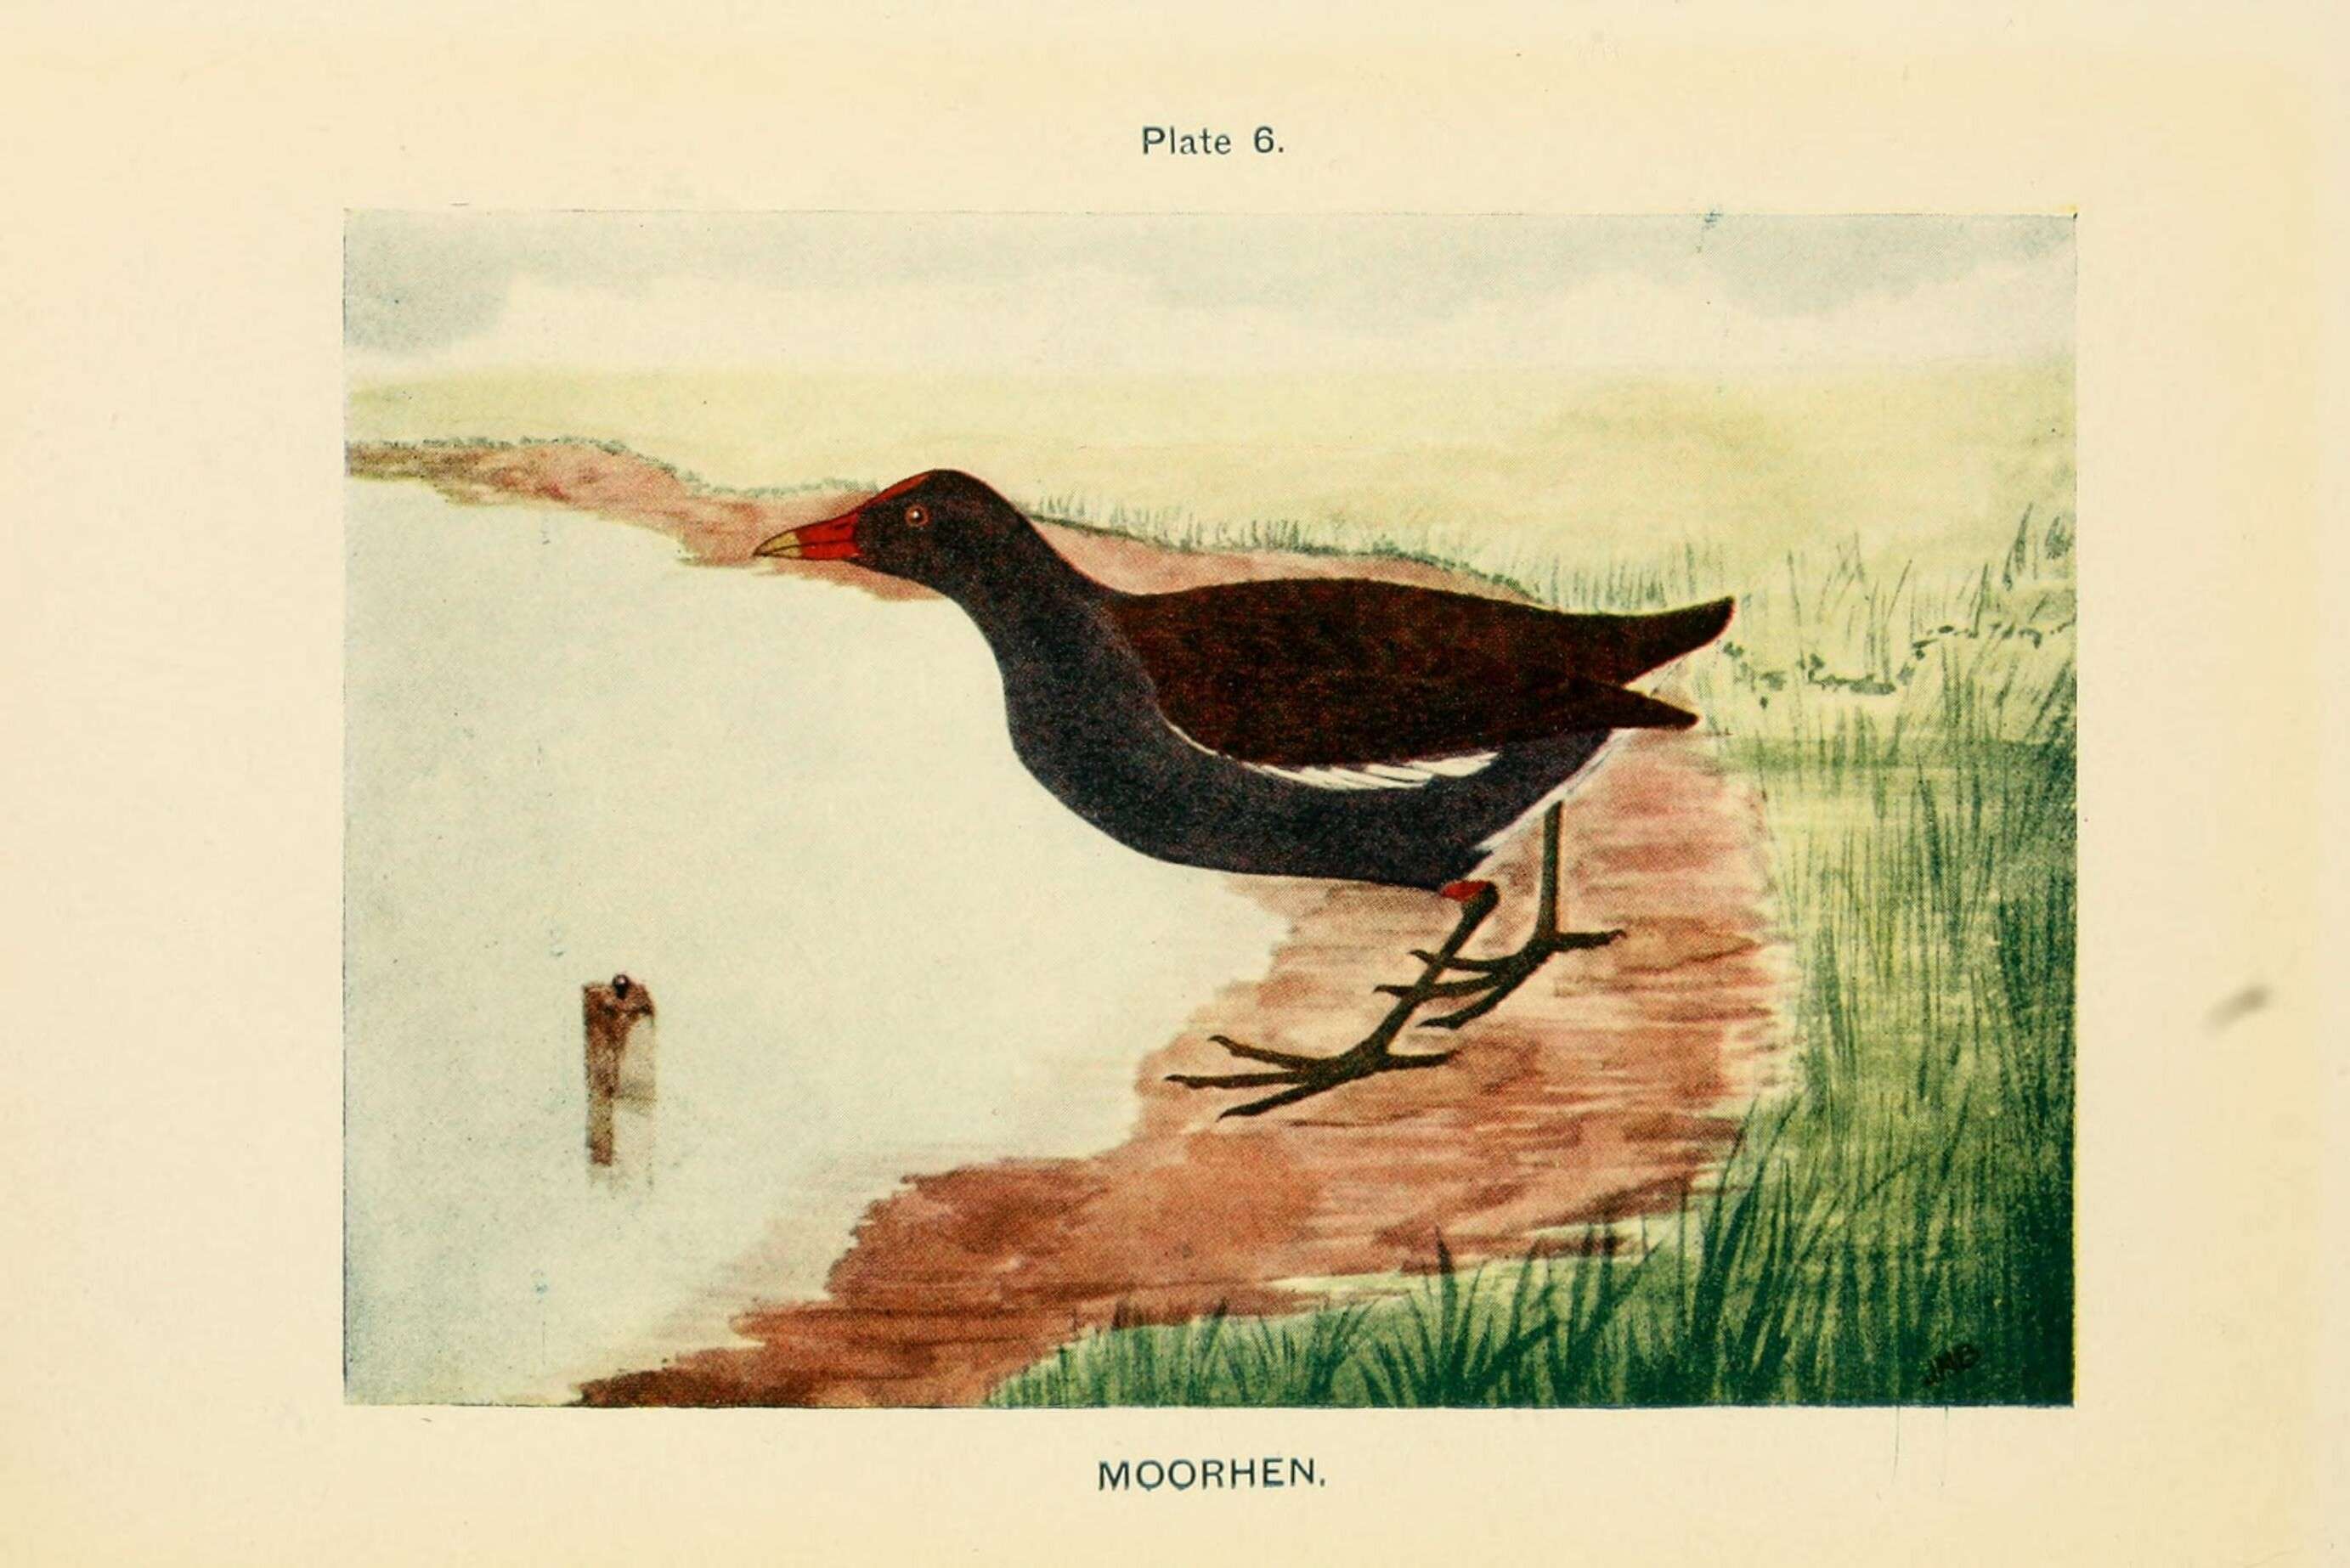 Image of Common Moorhen